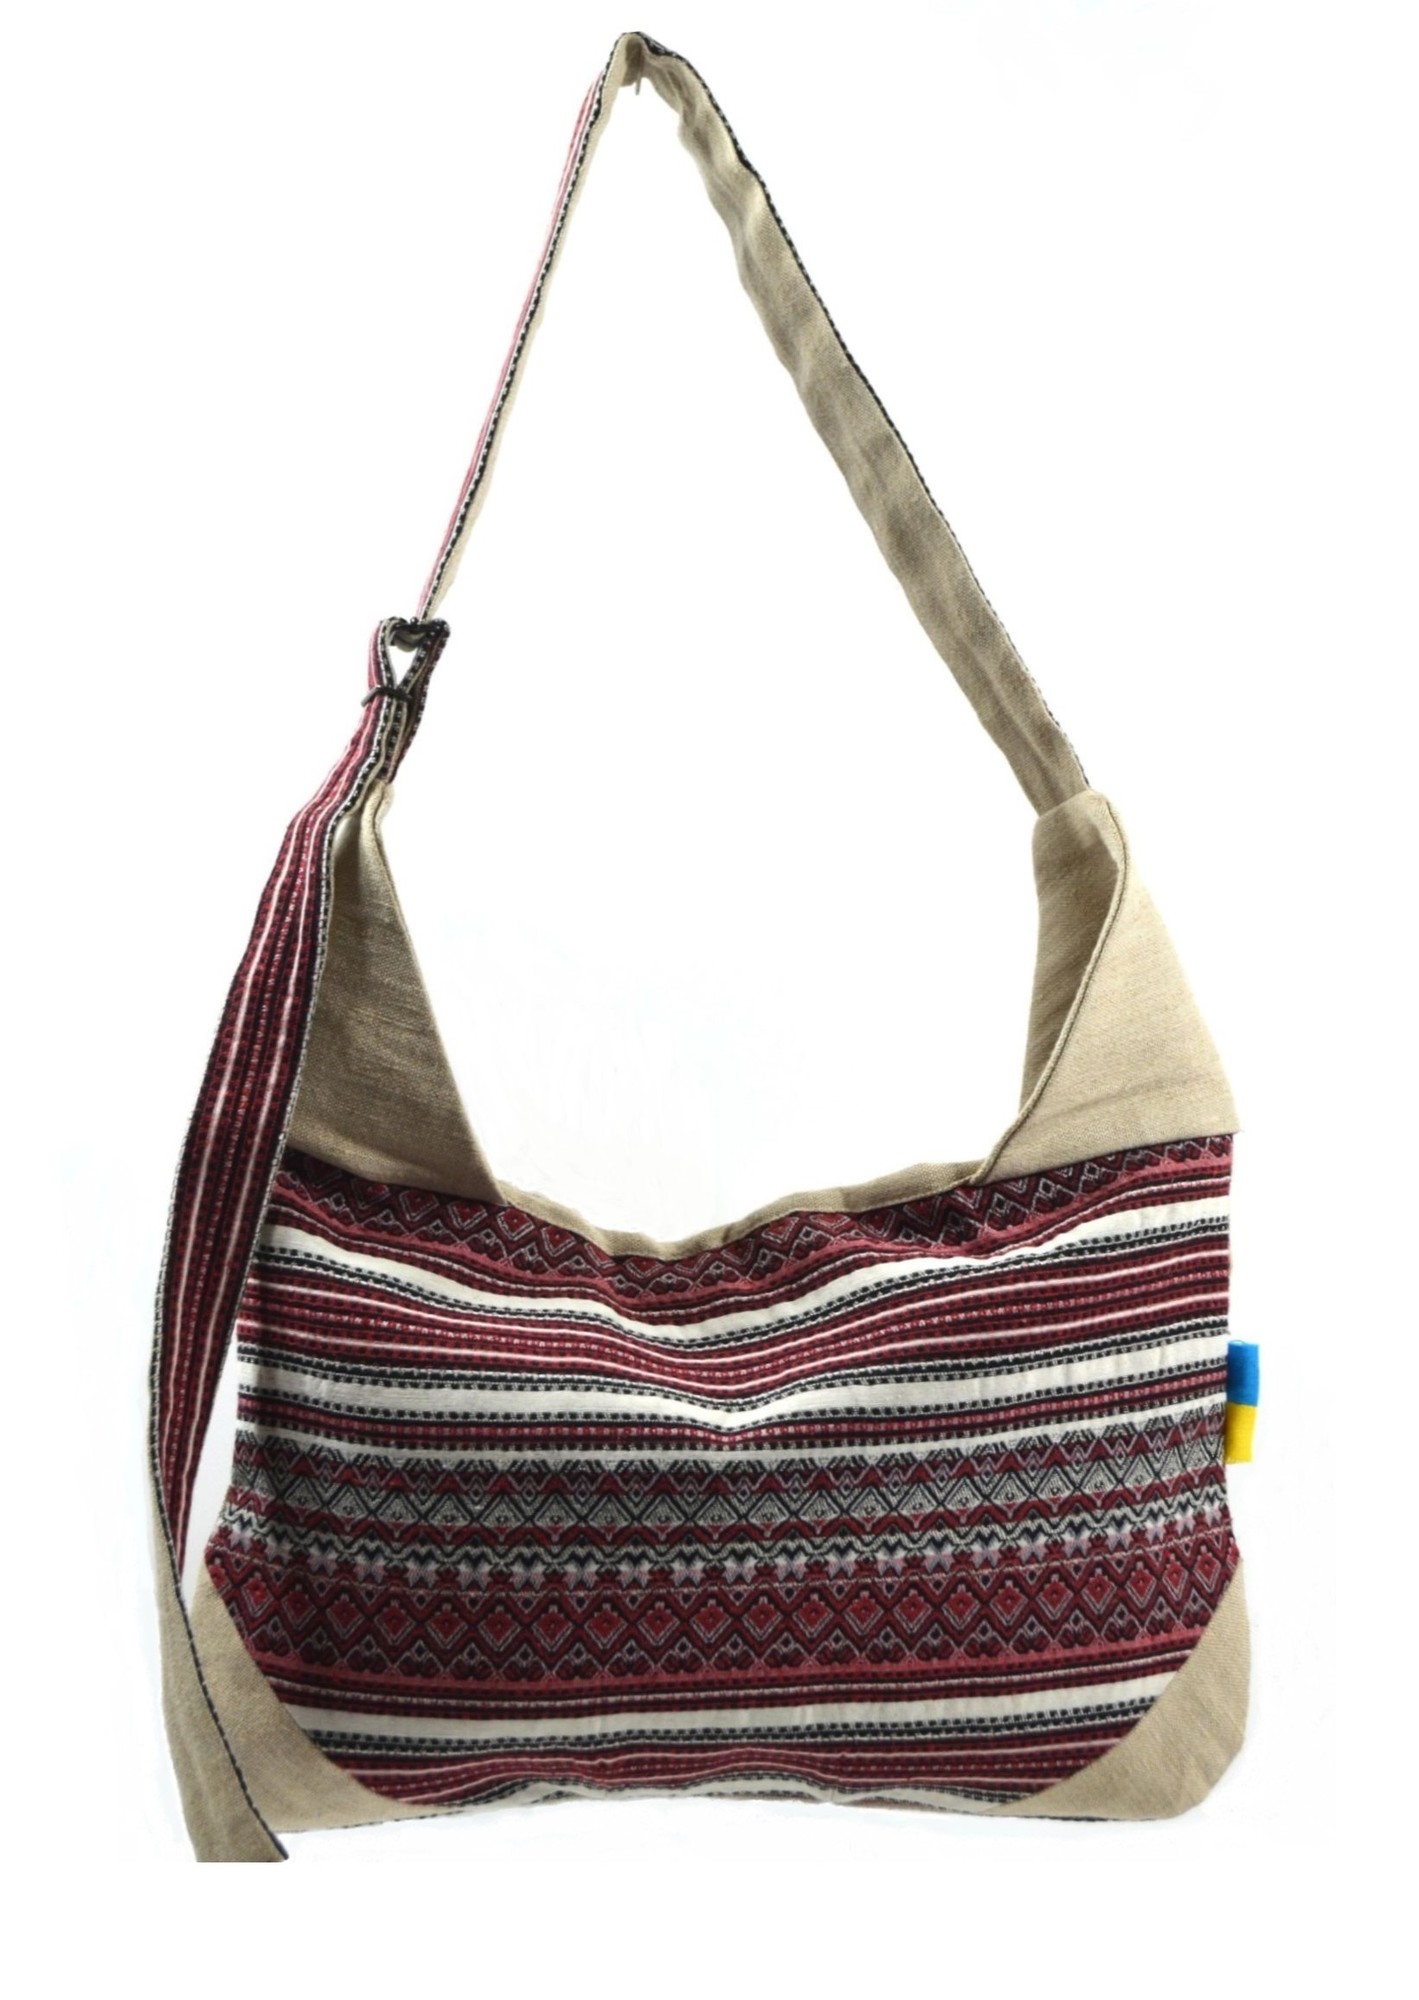 Handmade textile shoulder bag "RUTA".